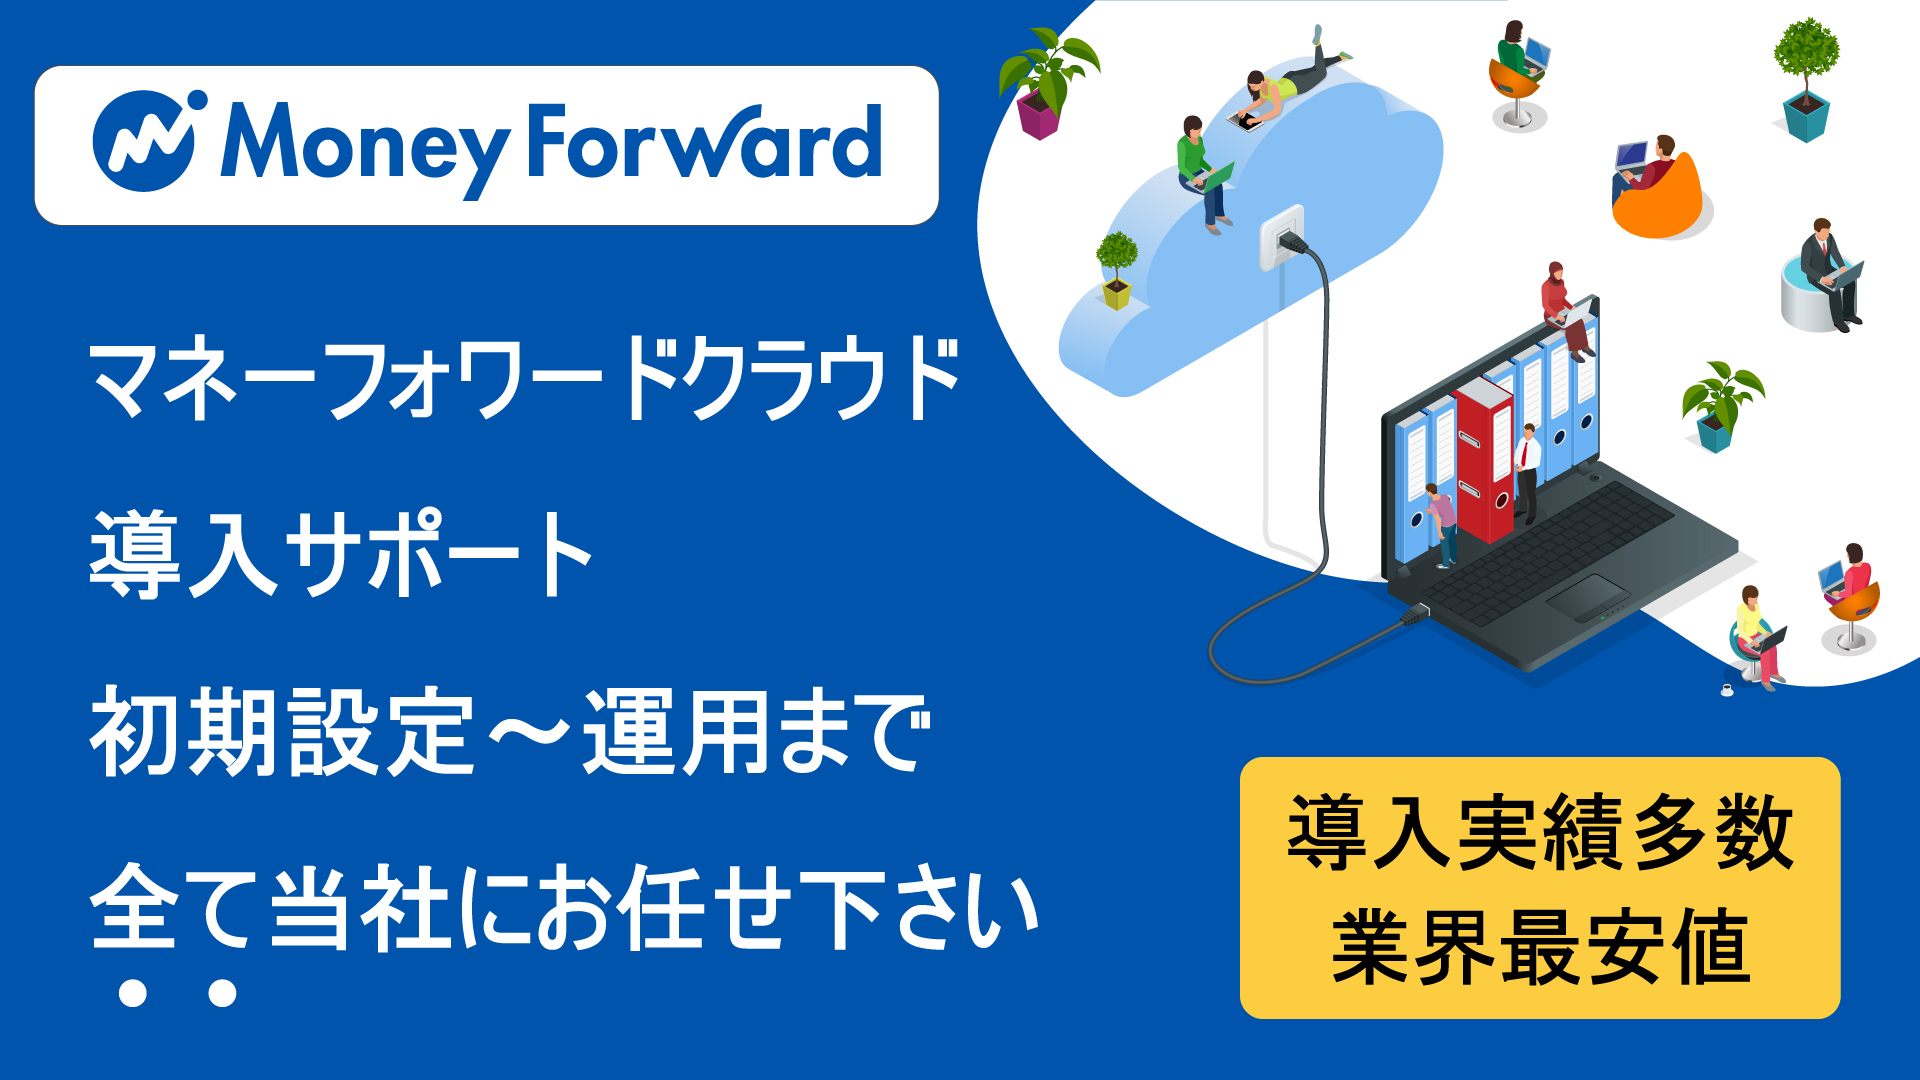 和泉市のMoney Forward(マネーフォワード)導入設定サポート説明画像